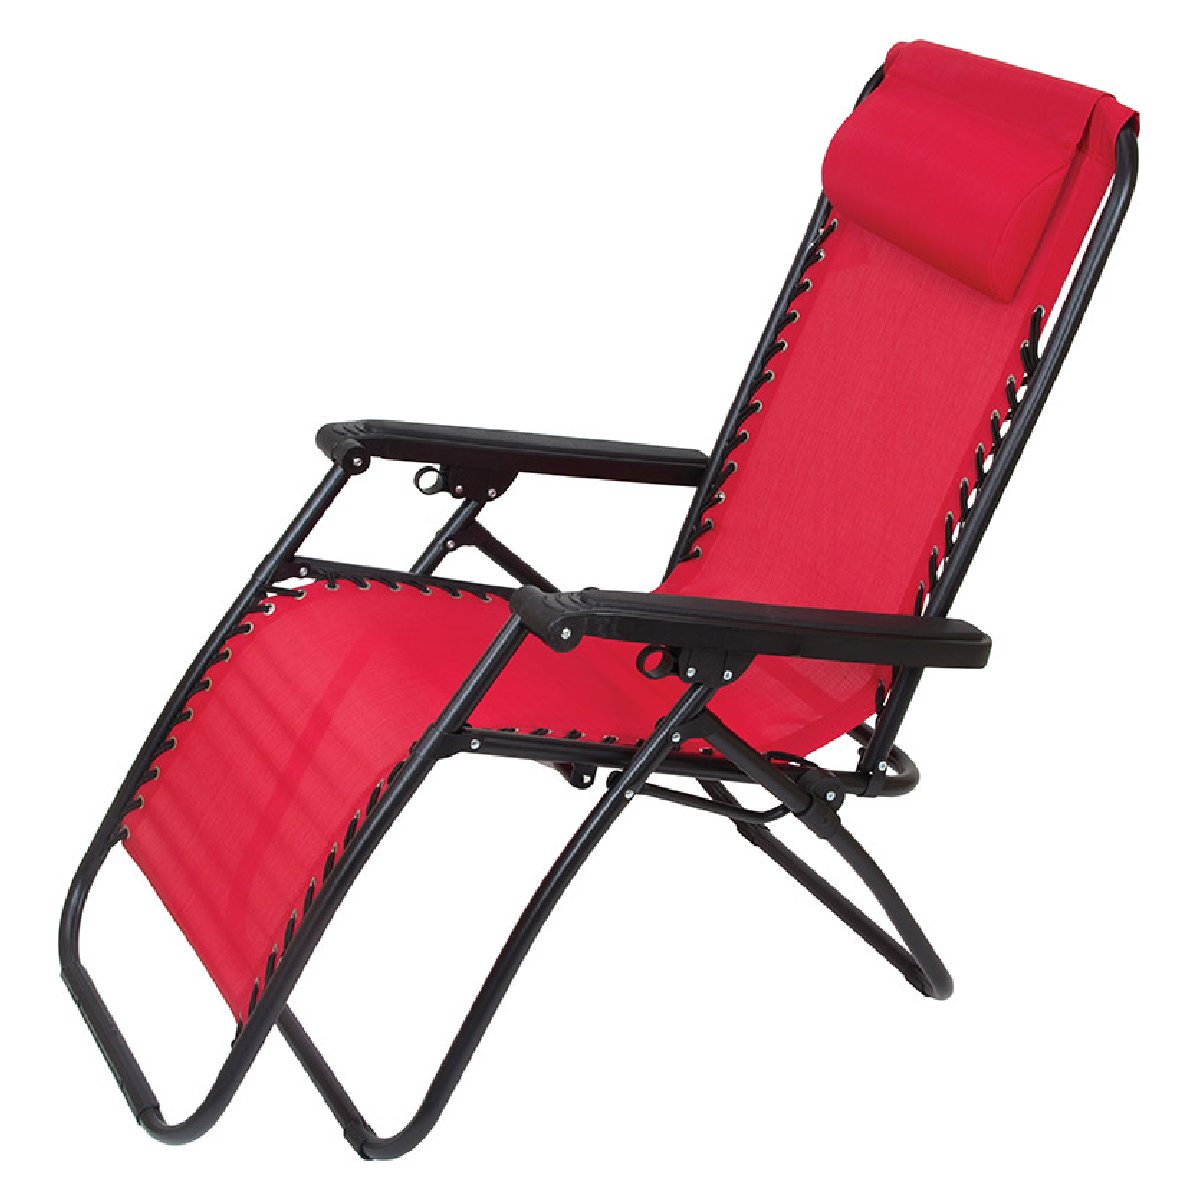 Кресло-шезлонг складное СНО-137-13 Люкс, цвет-красный (993099)Купить